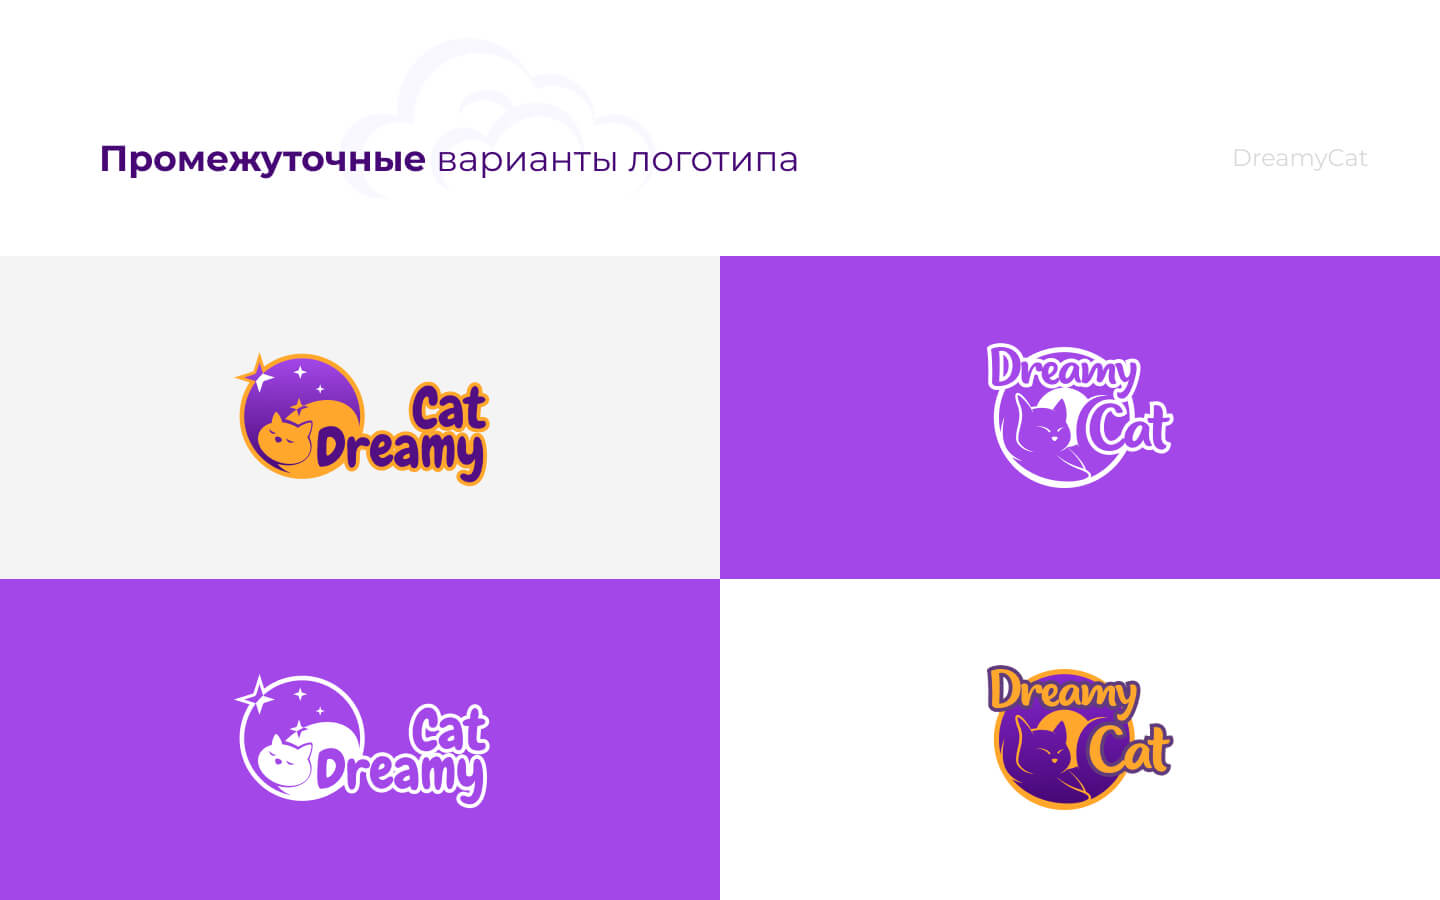 DreamyCat_logo_05